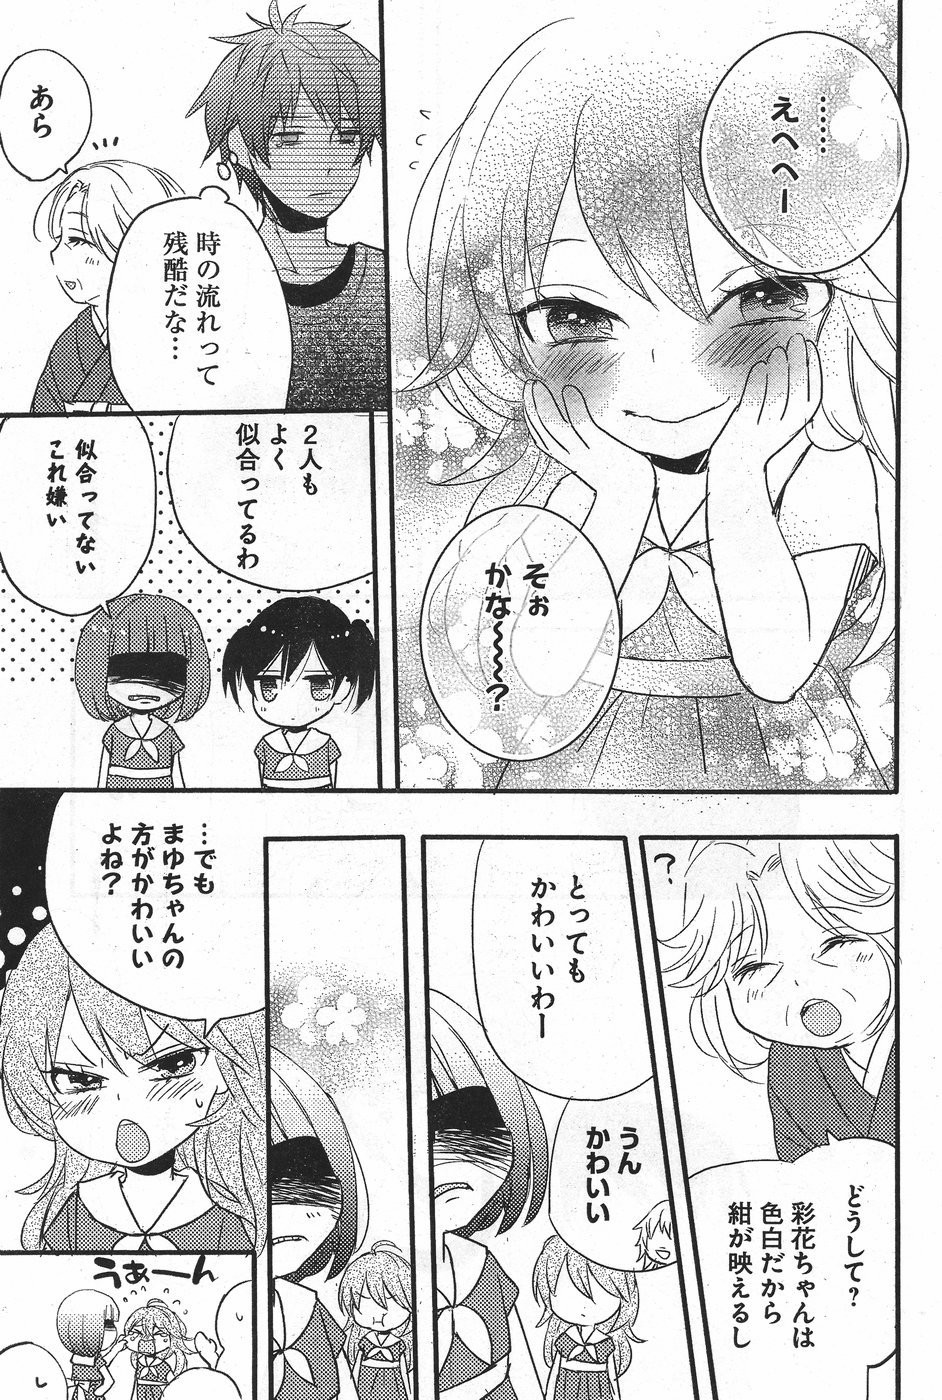 Bokura wa Minna Kawaisou - Chapter 71.5 - Page 11